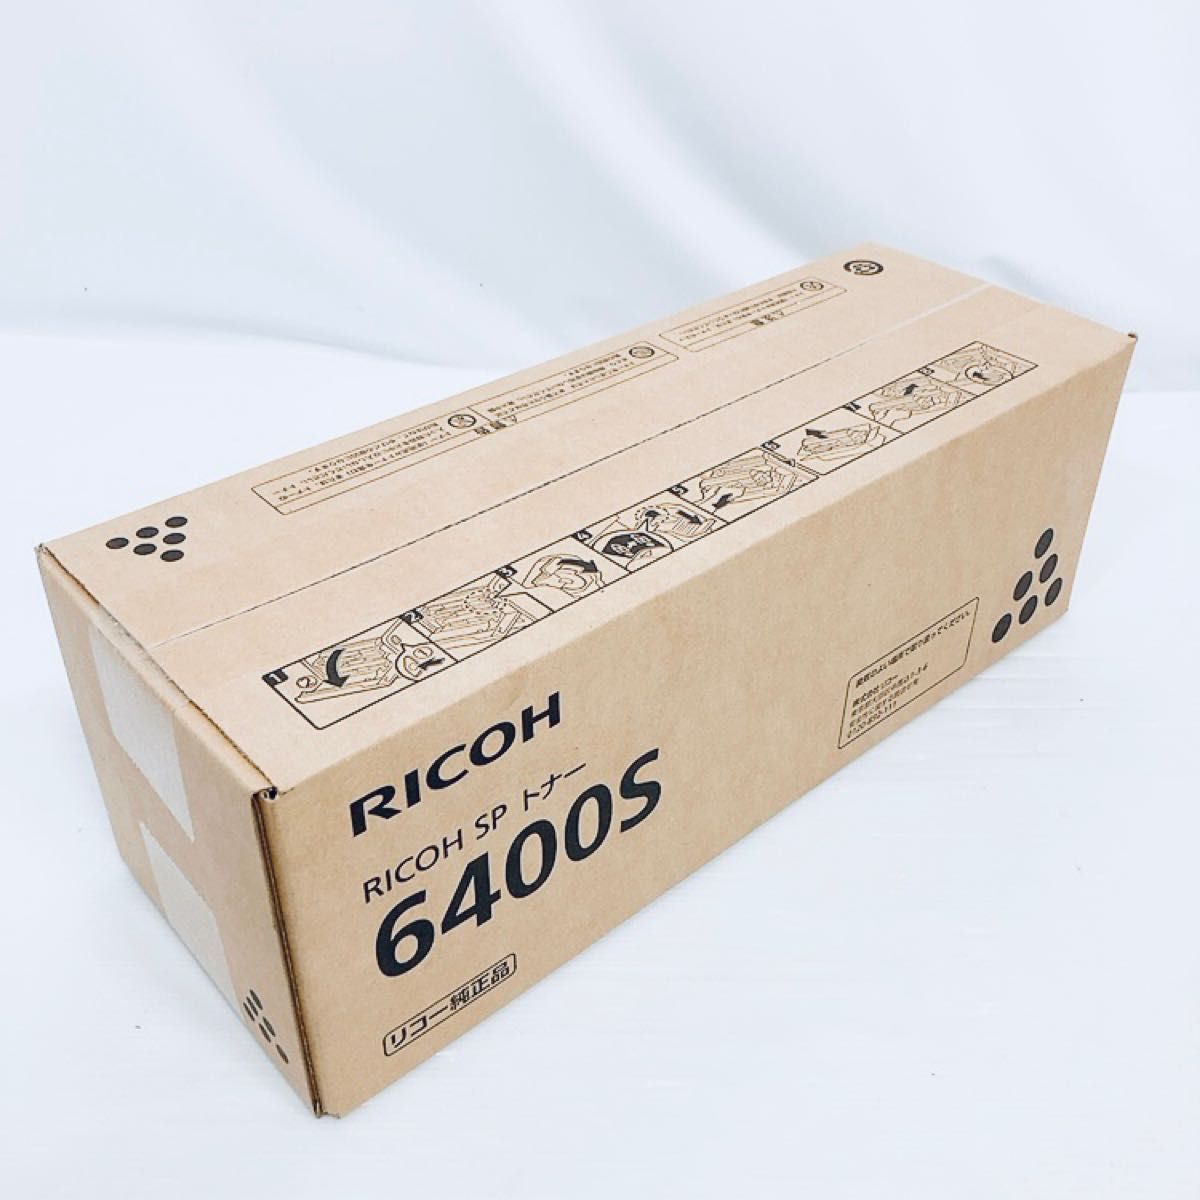 RICOH リコー SP トナー 6400S 1本 M9X7-00 純正 未開封 新品 消耗品 ...